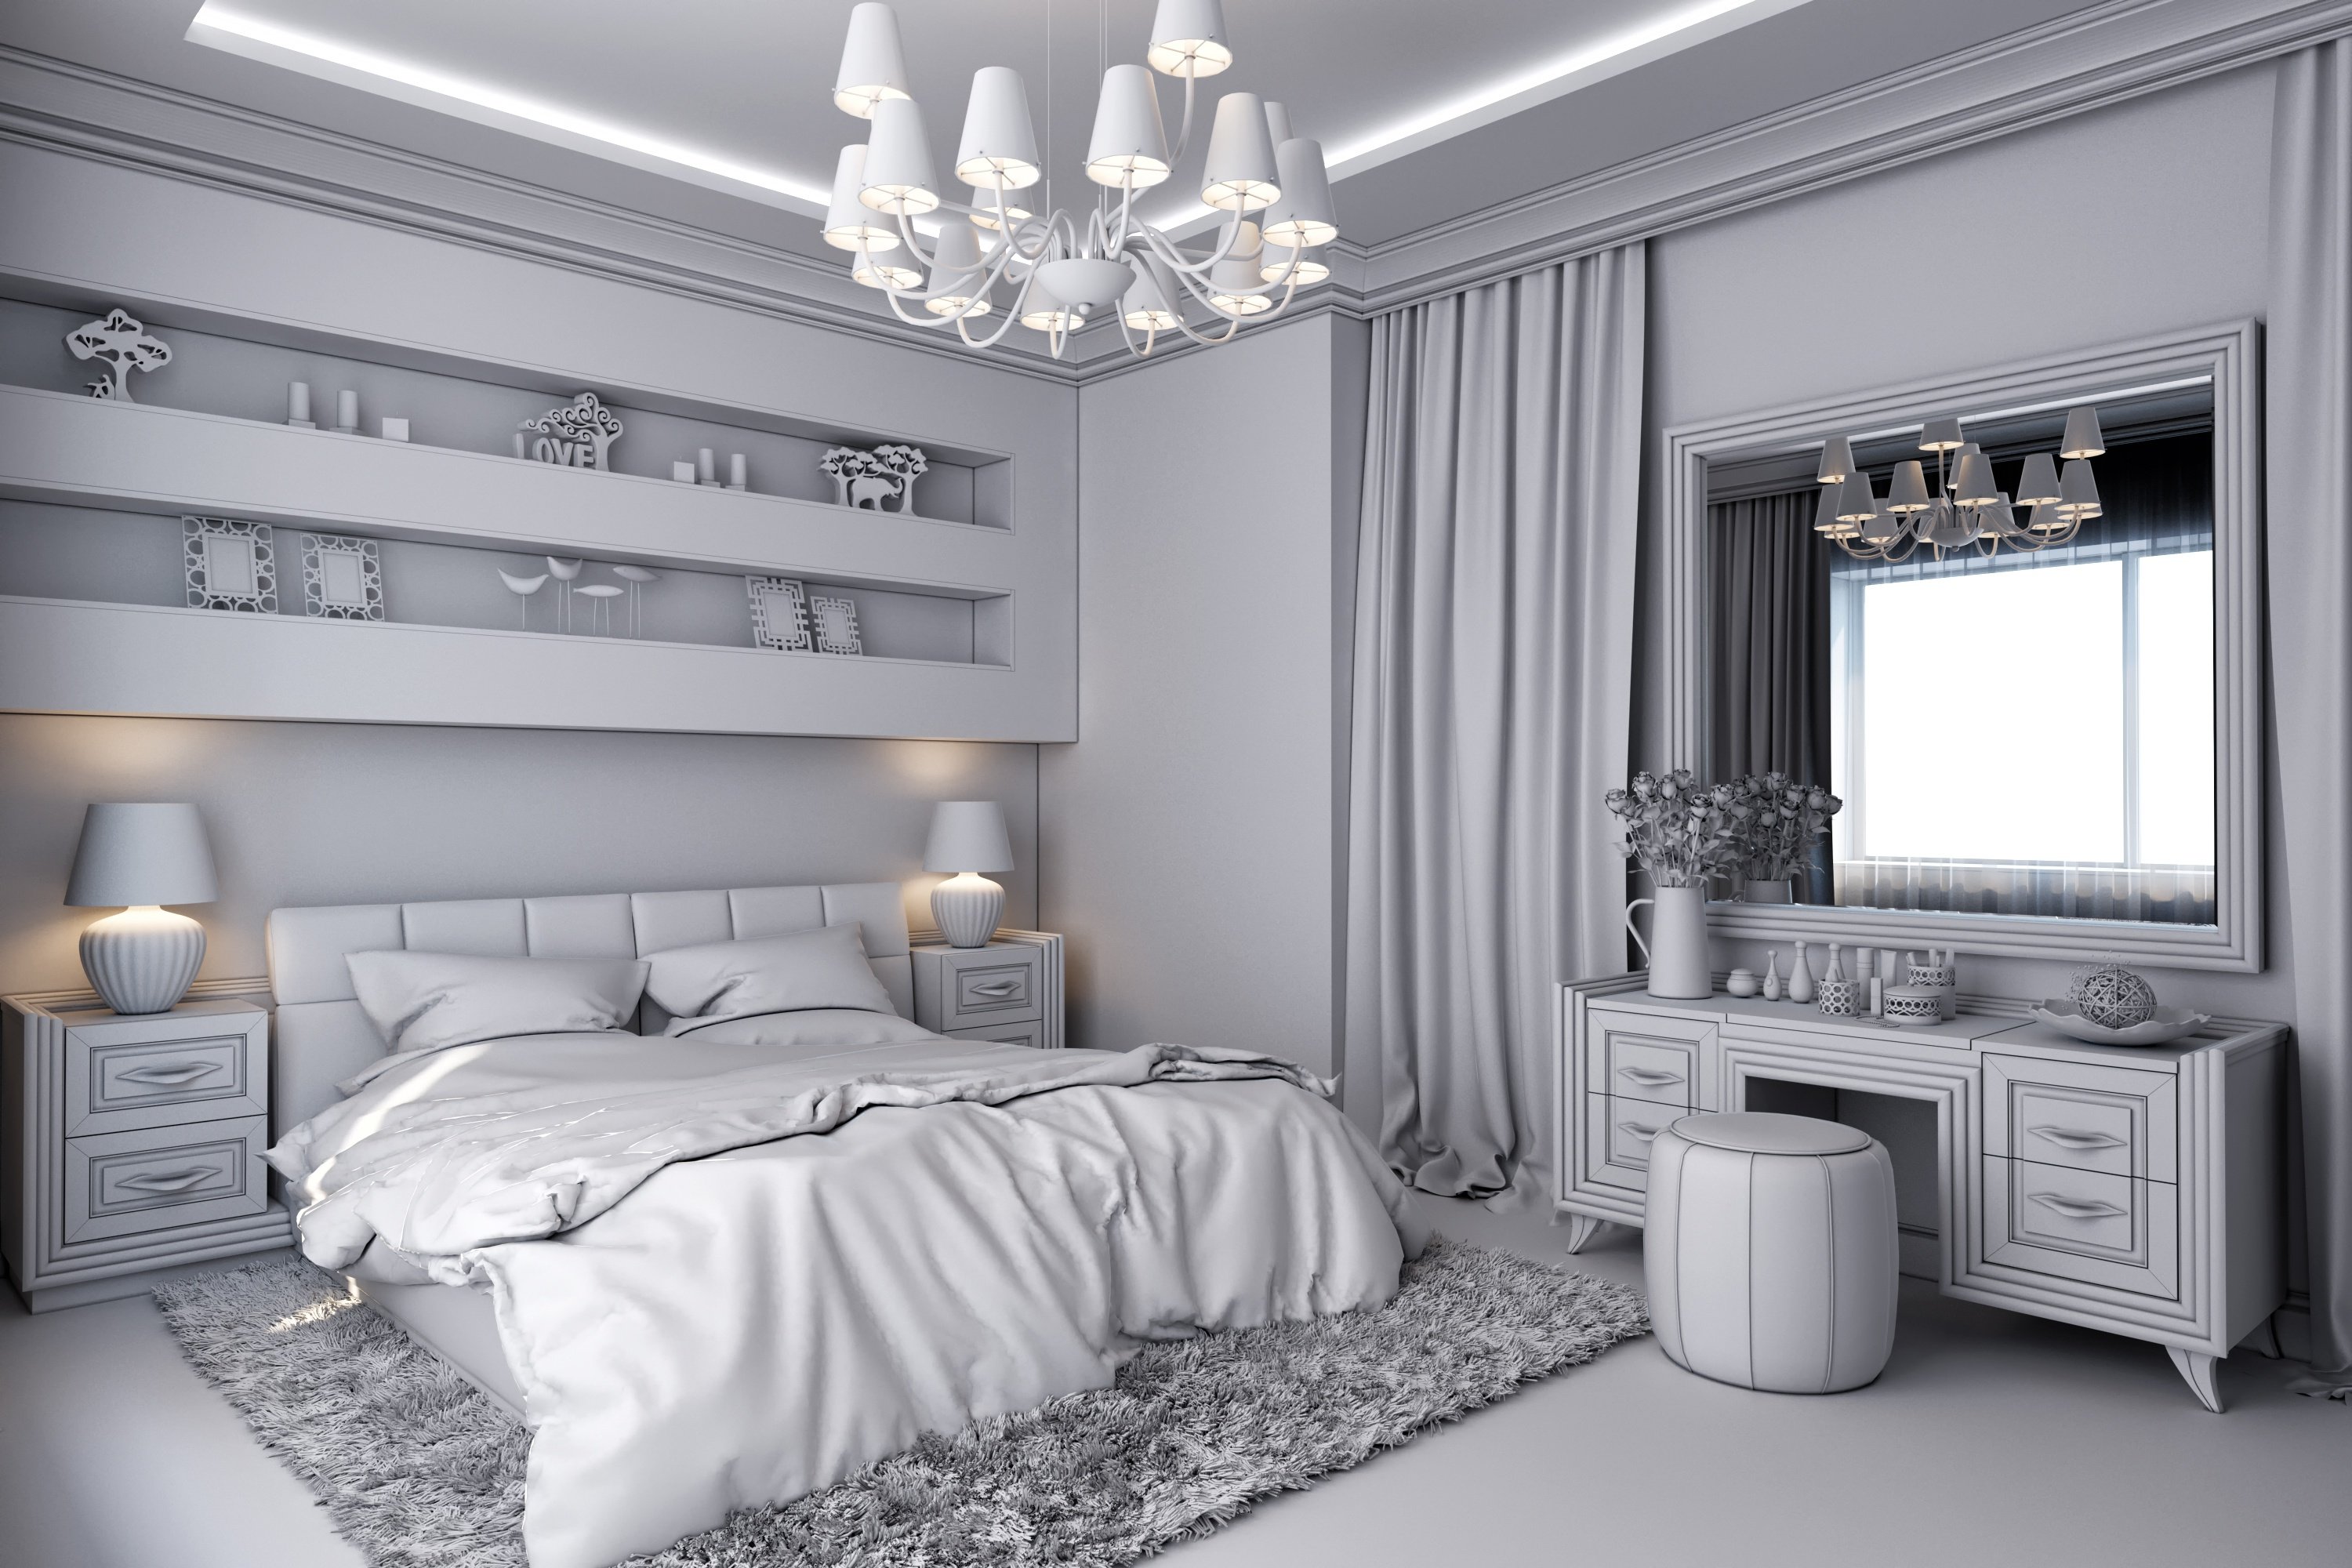 Фисташковая спальня - 150 фото лучших новинок дизайна спальни фисташкового цвета